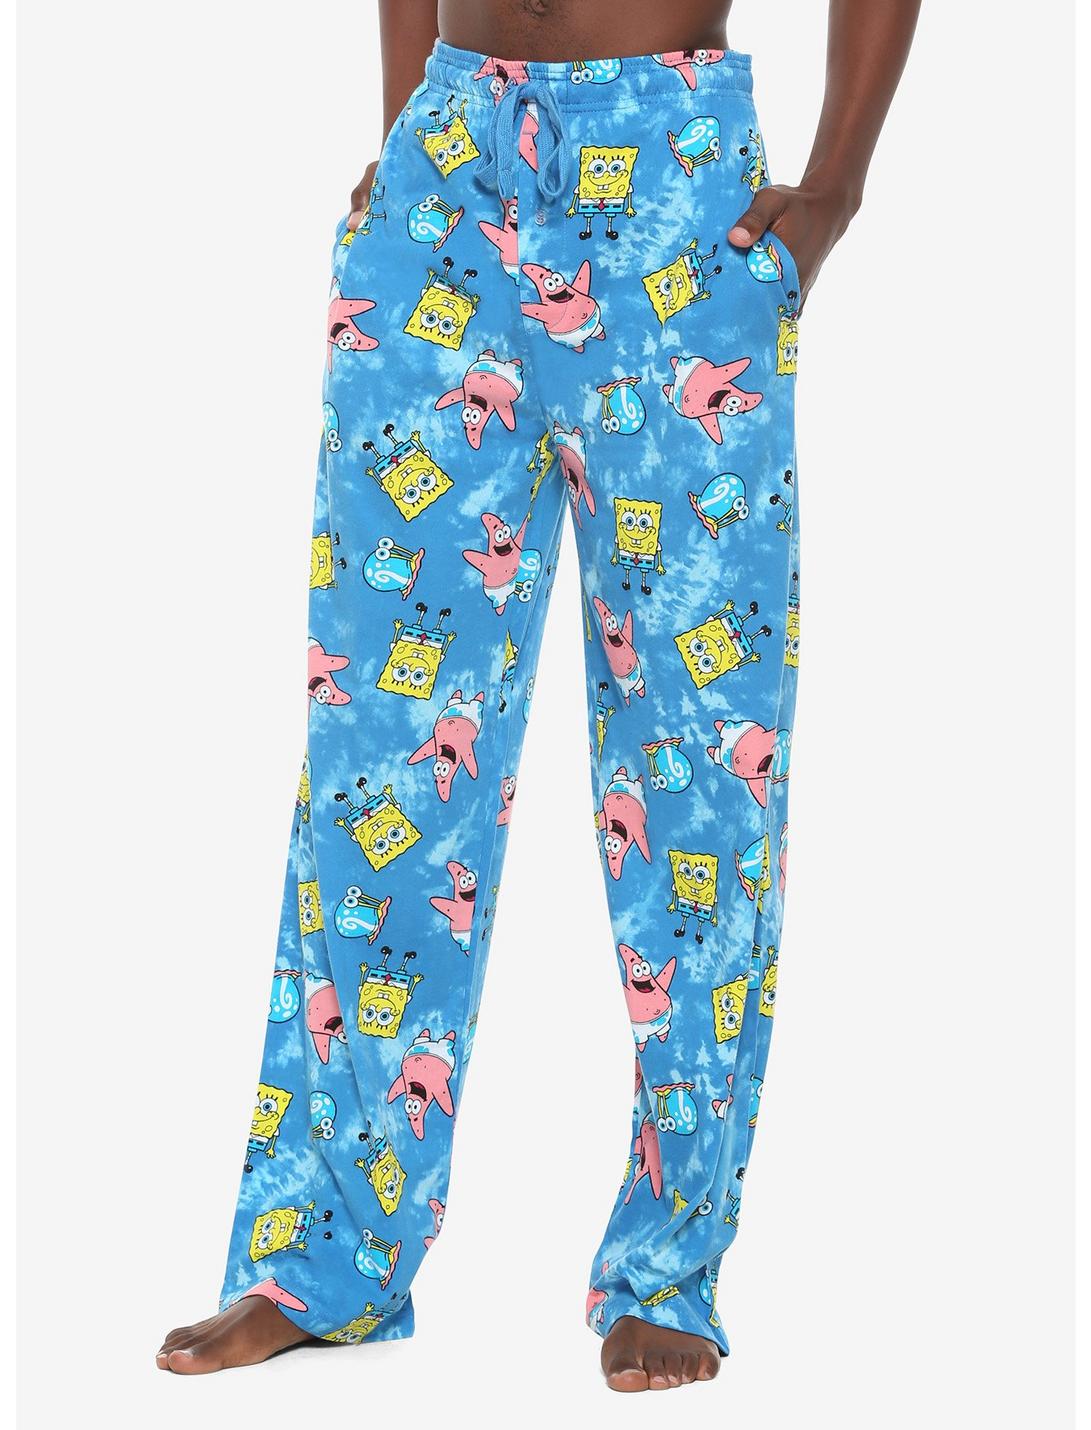 SpongeBob SquarePants Blue Tie-Dye Pajama Pants, TIE DYE, hi-res